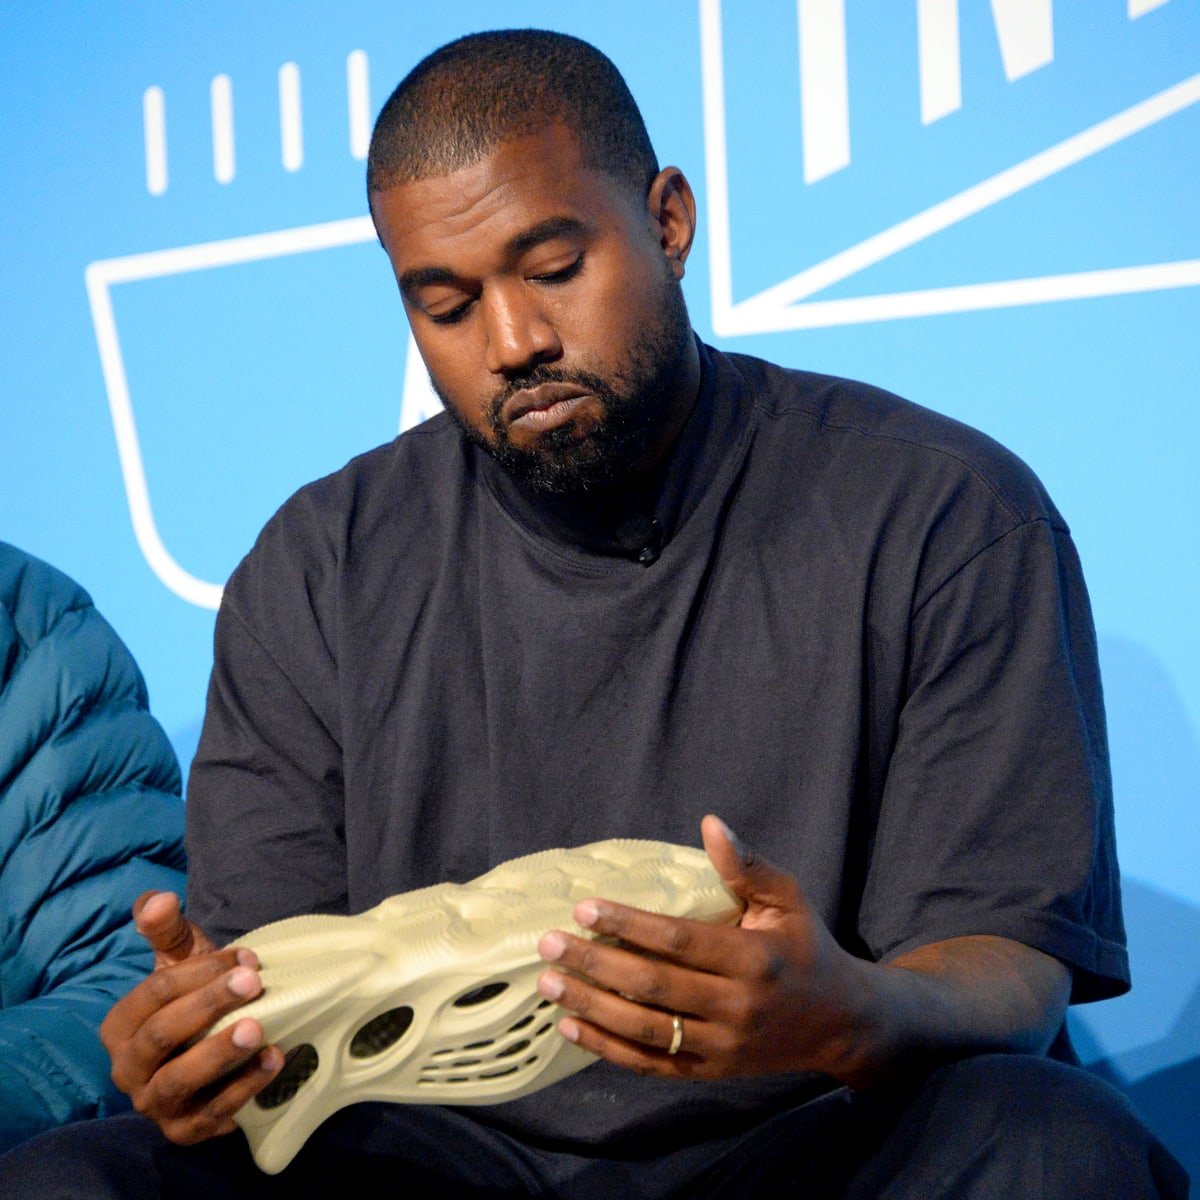 Otro más: Adidas pone fin a relación comercial con Kanye West